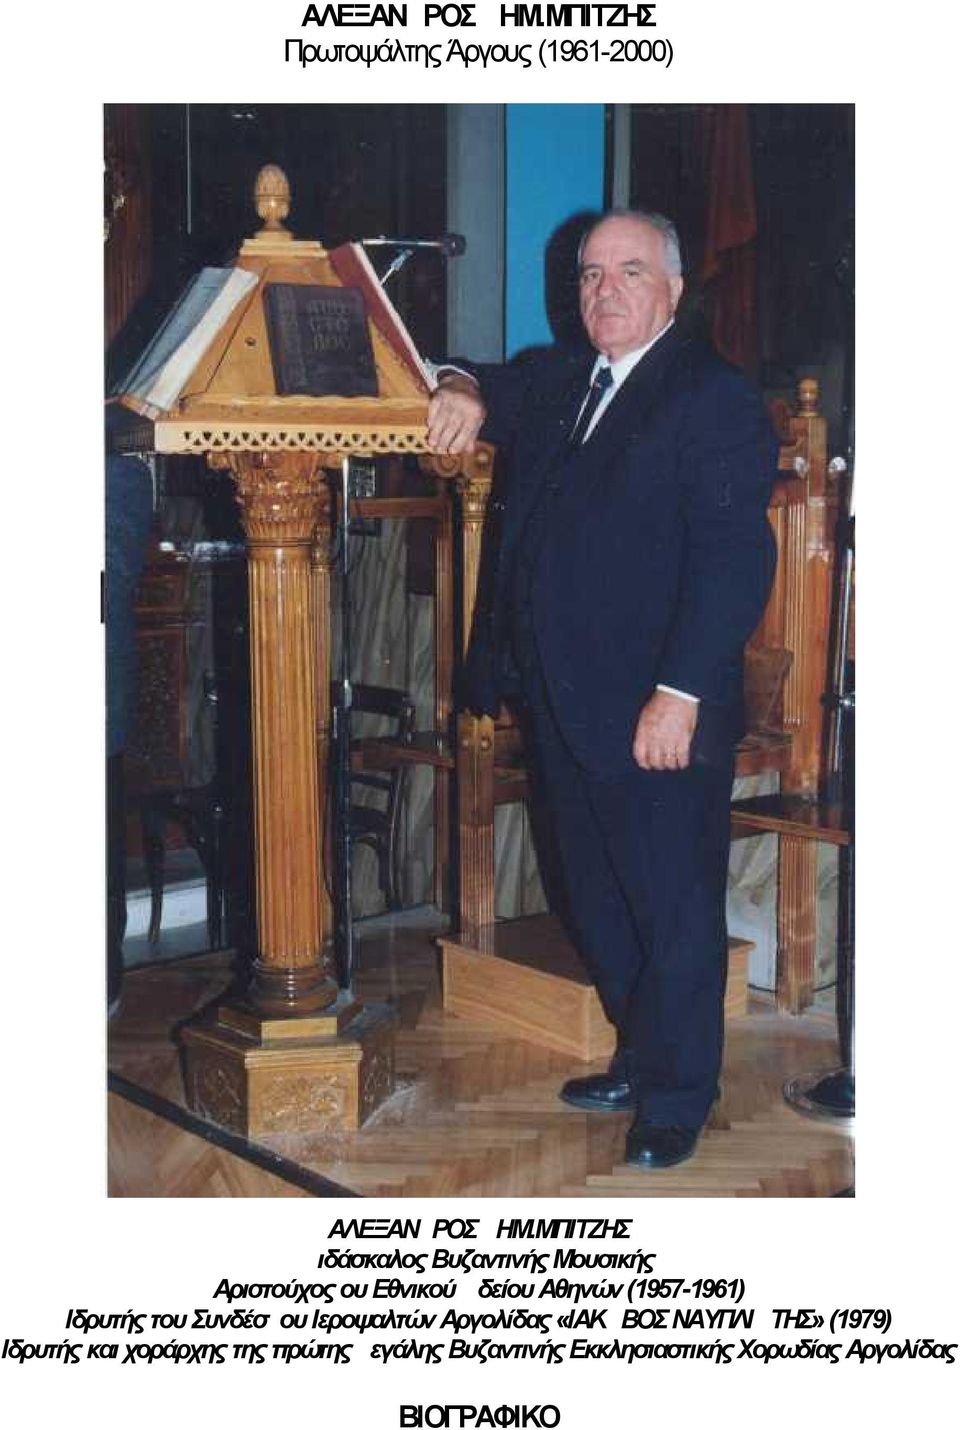 (1957-1961) Ιδρυτής του Συνδέσμου Ιεροψαλτών Αργολίδας «ΙΑΚΩΒΟΣ ΝΑΥΠΛΙΩΤΗΣ»